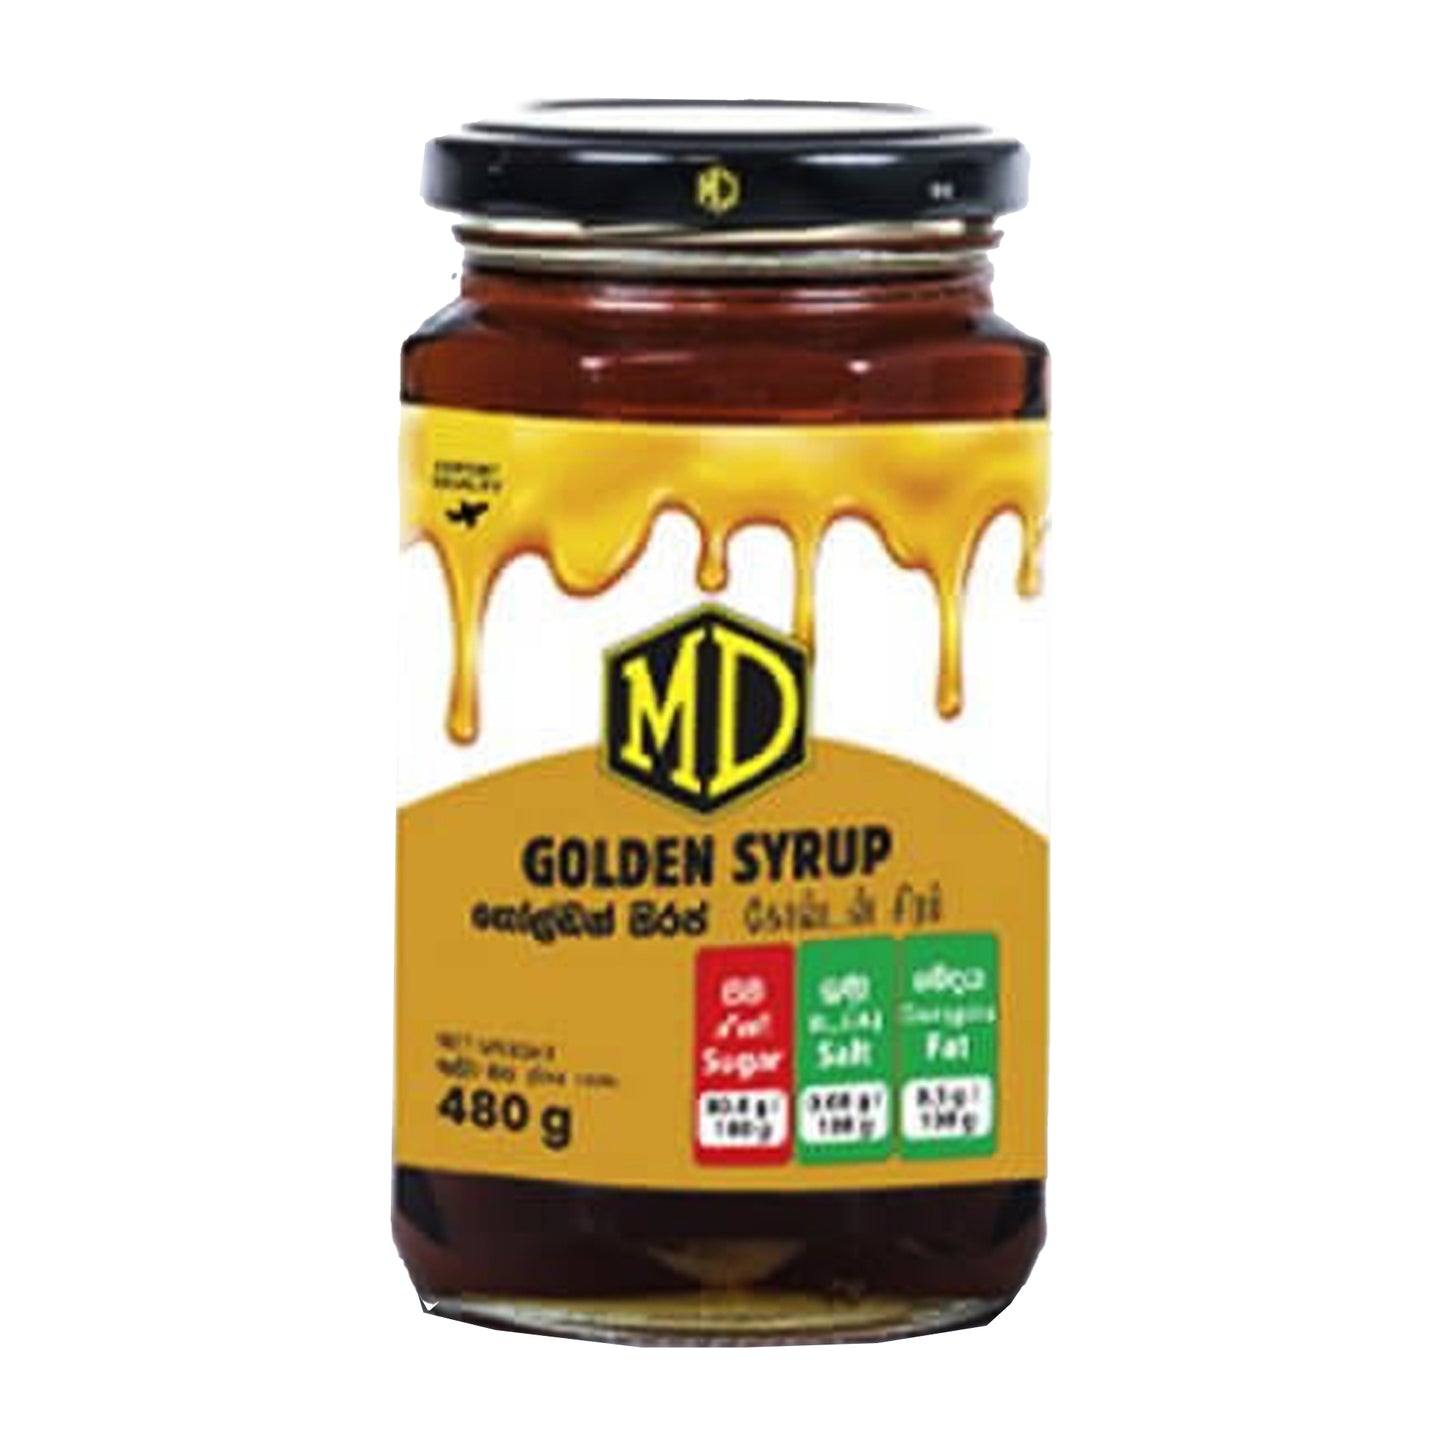 Sirop MD Golden (480 g)